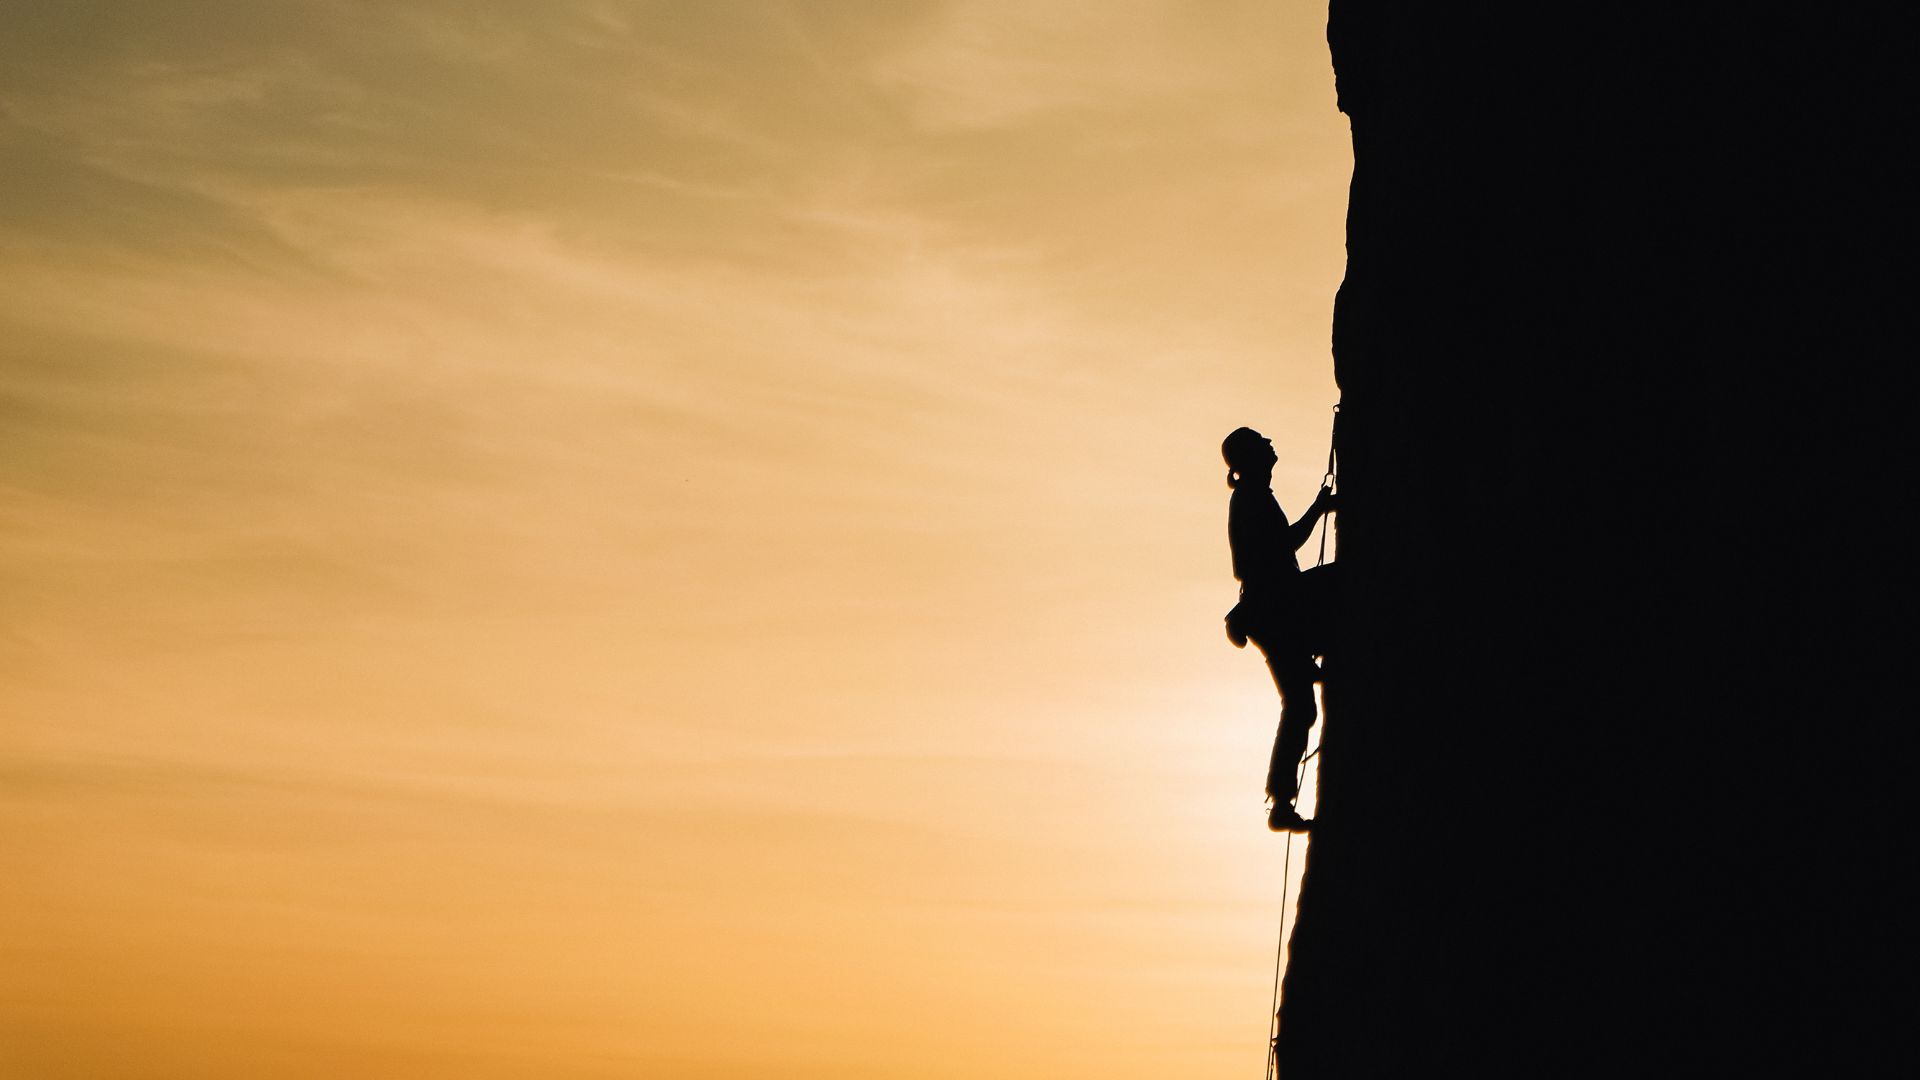 Imagem de um homem escalando uma montanha.